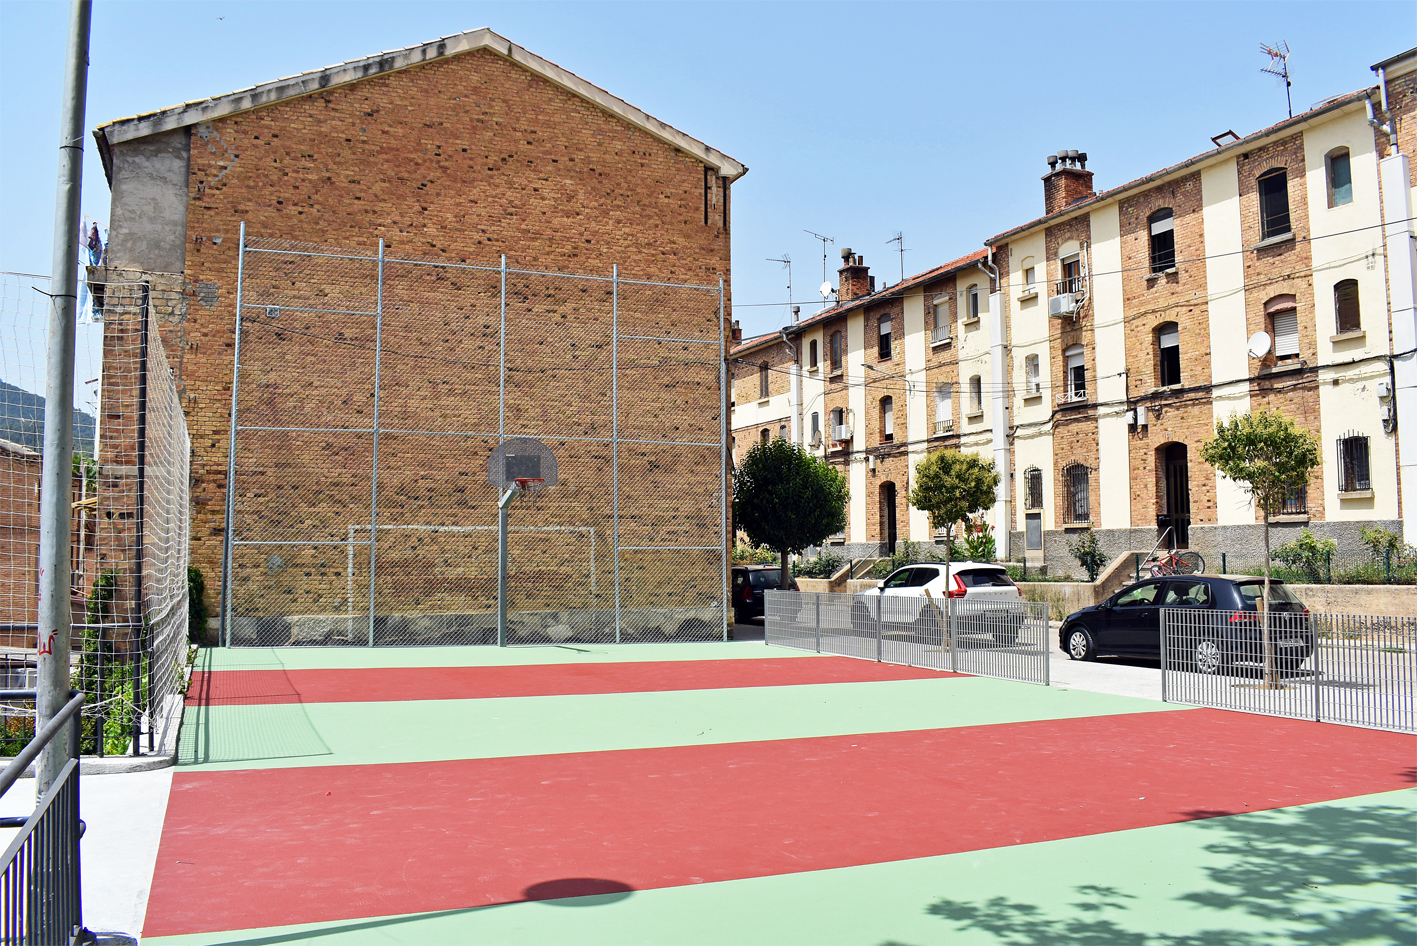 Acaben les obres de millora de la pista esportiva del carrer de les Flors, al barri de Santa Maria